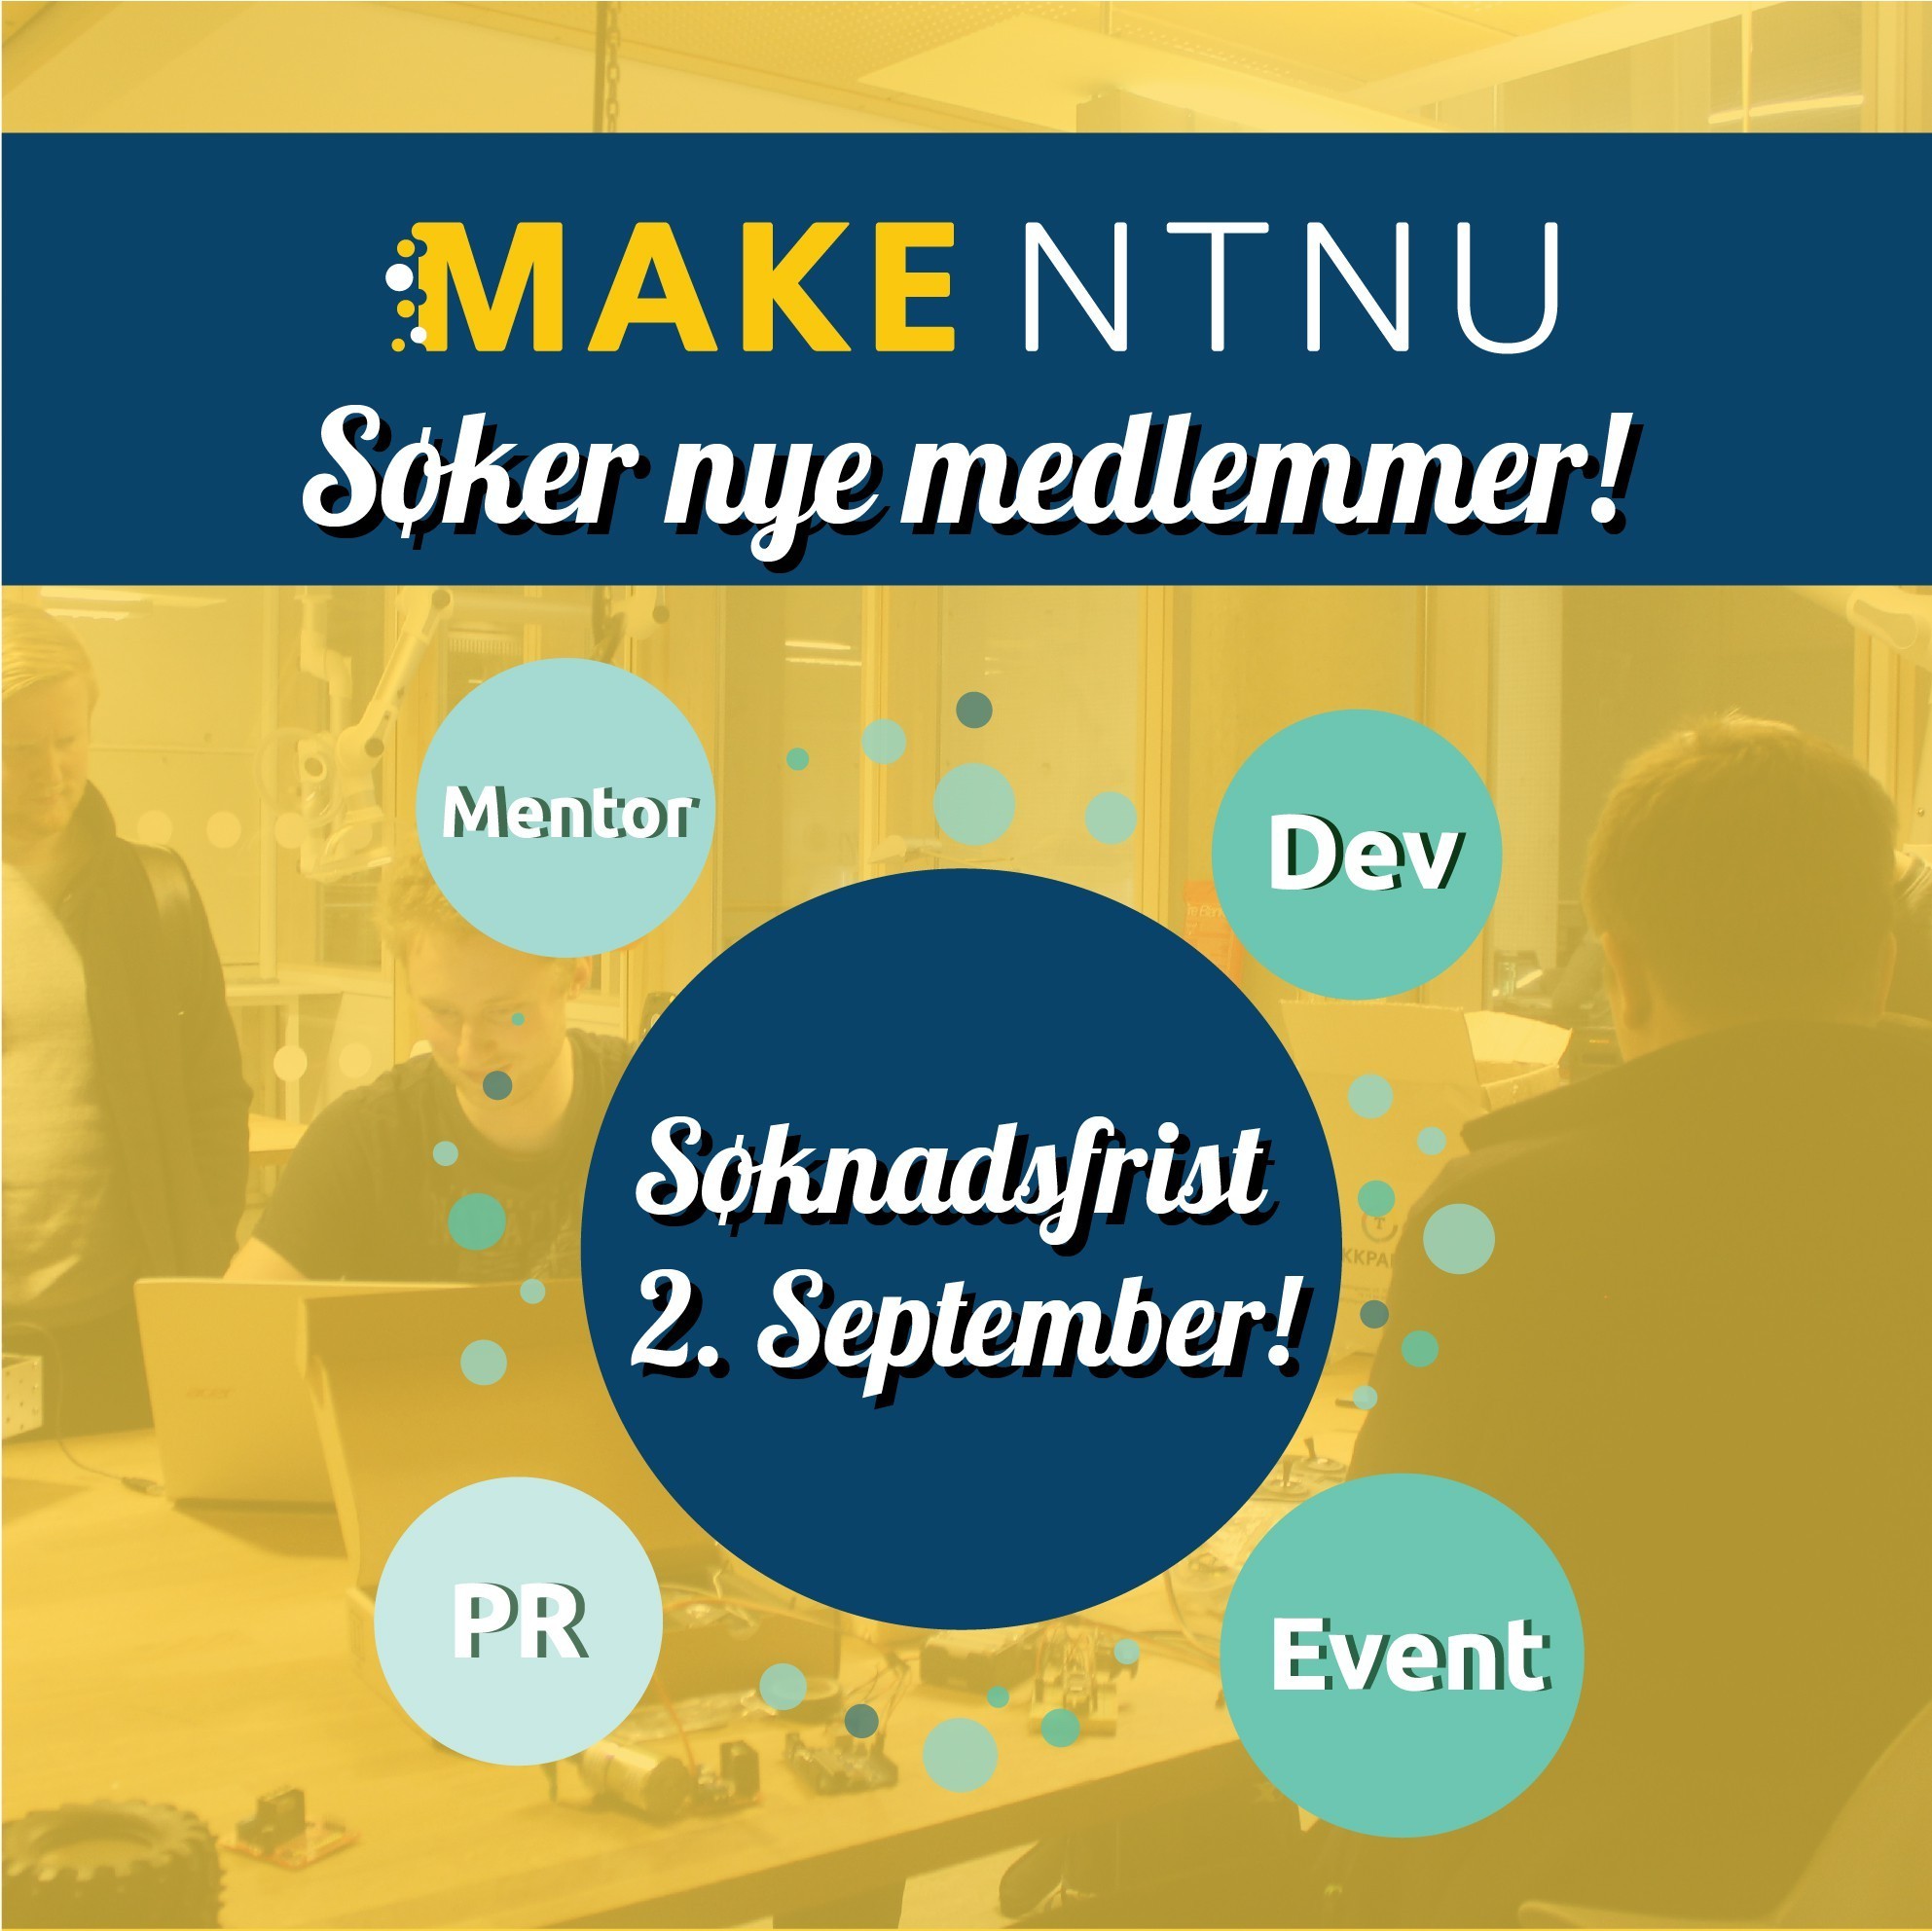 MAKE NTNU søker nye medlemmer! Komiteer: Mentor, Dev, PR og Event. Søknadsfrist 2. september!